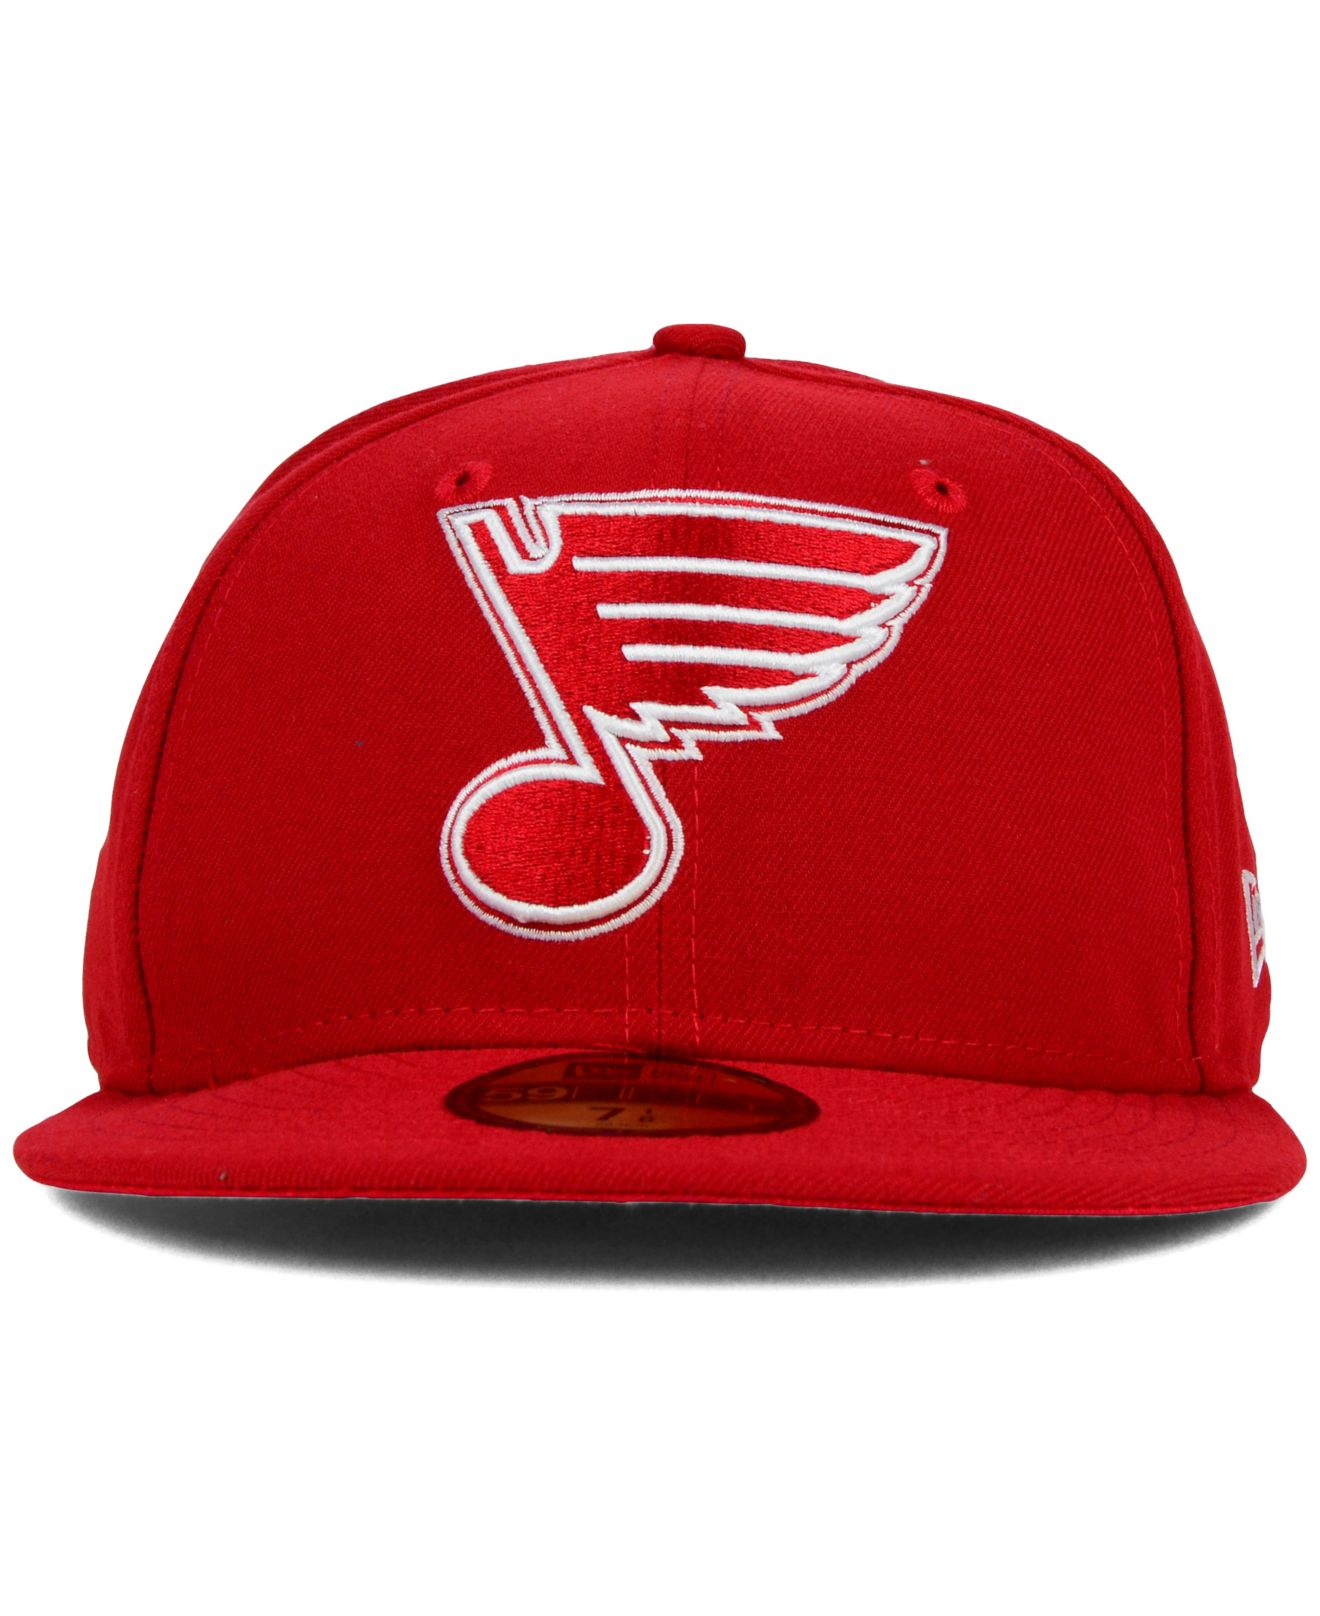 Reebok St. Louis Blues Second Season Fitted Hat